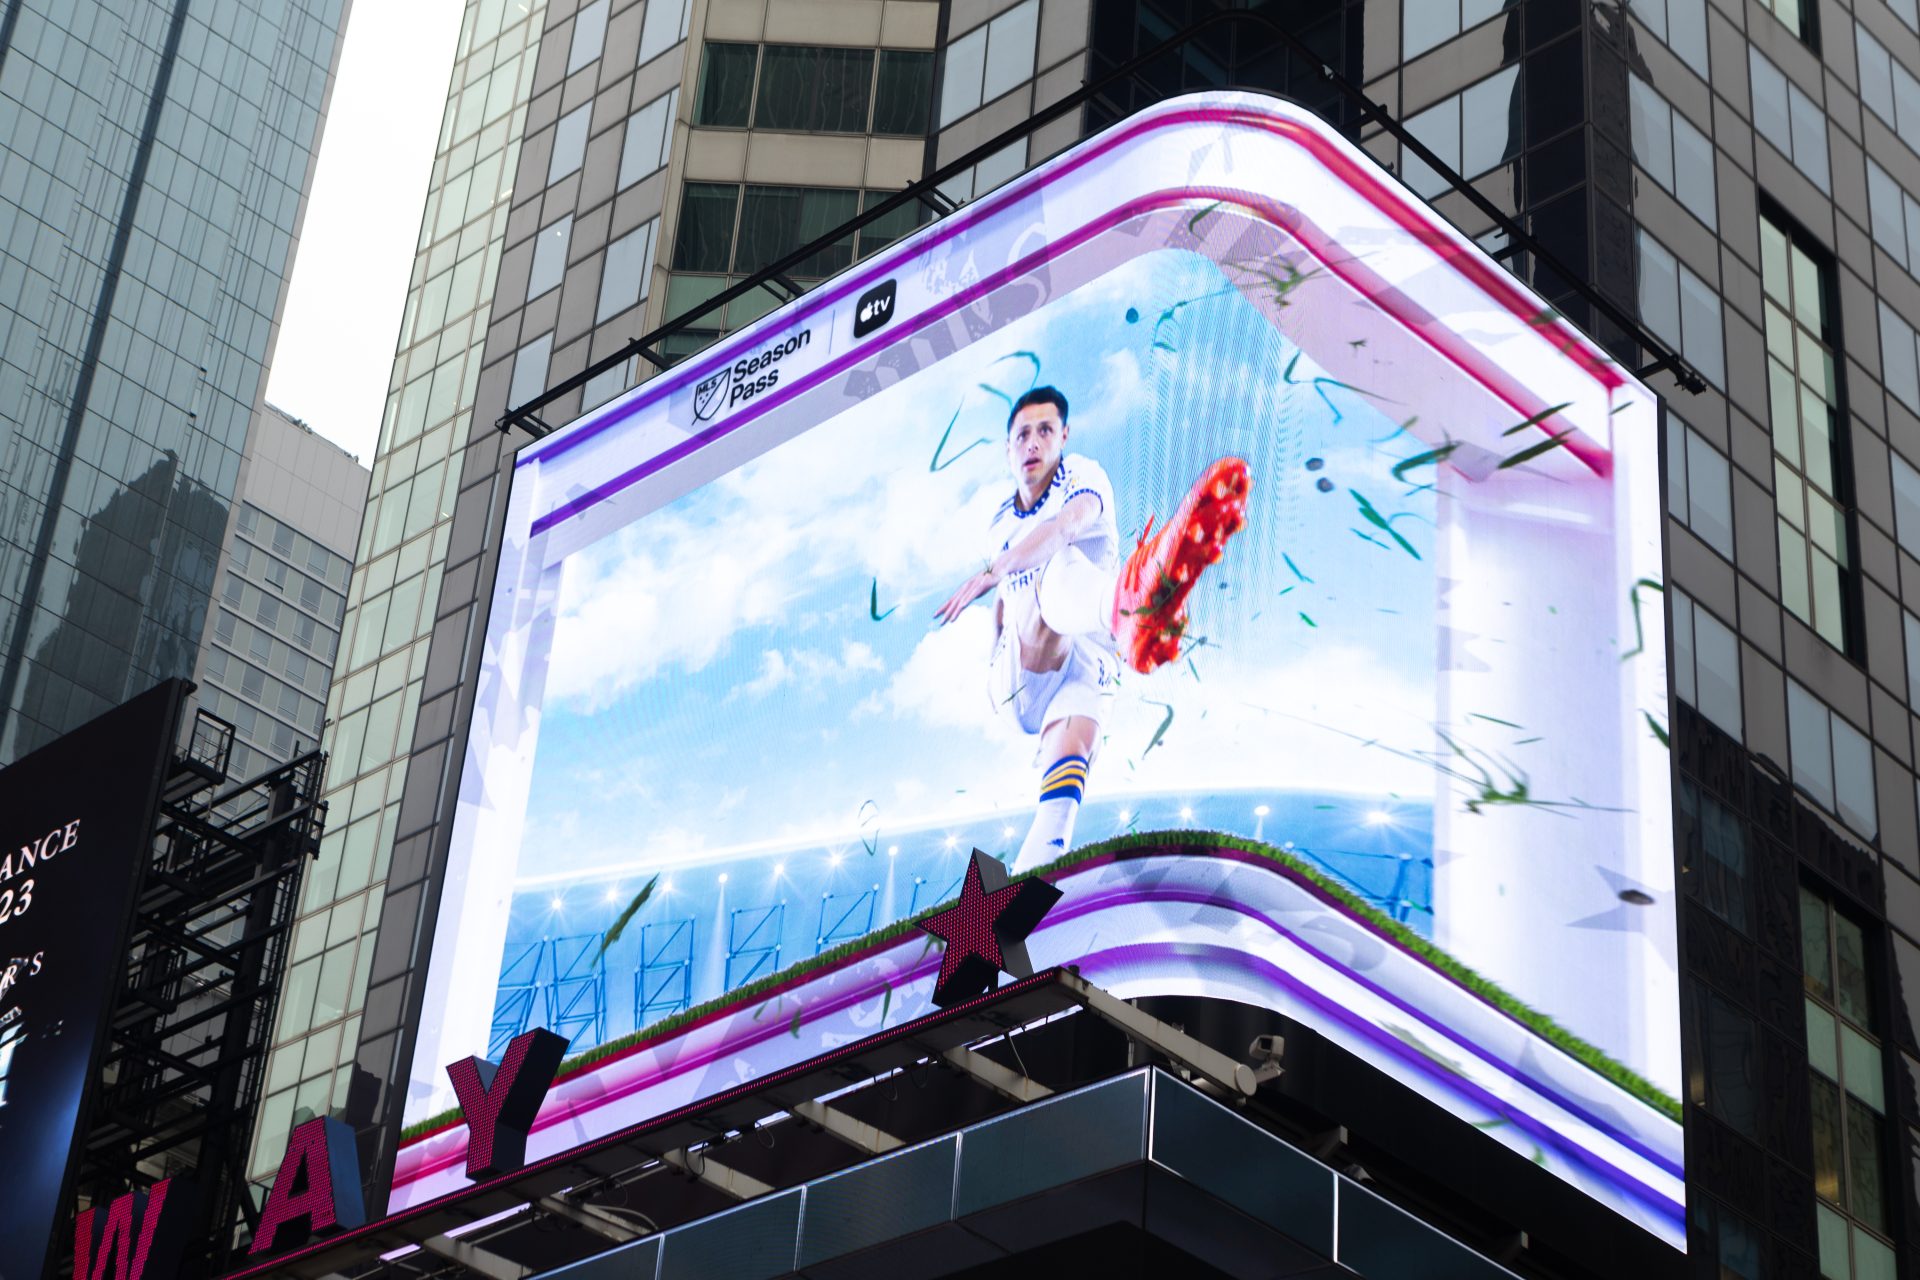 Fotografía cedida por la MLS donde se ve al mexicano Javier 'Chicharito' Hernández conectando una espectacular chilena en el vistoso anuncio 3D colgado este miércoles por la MLS en las vallas publicitarias de Times Square, en Nueva York.